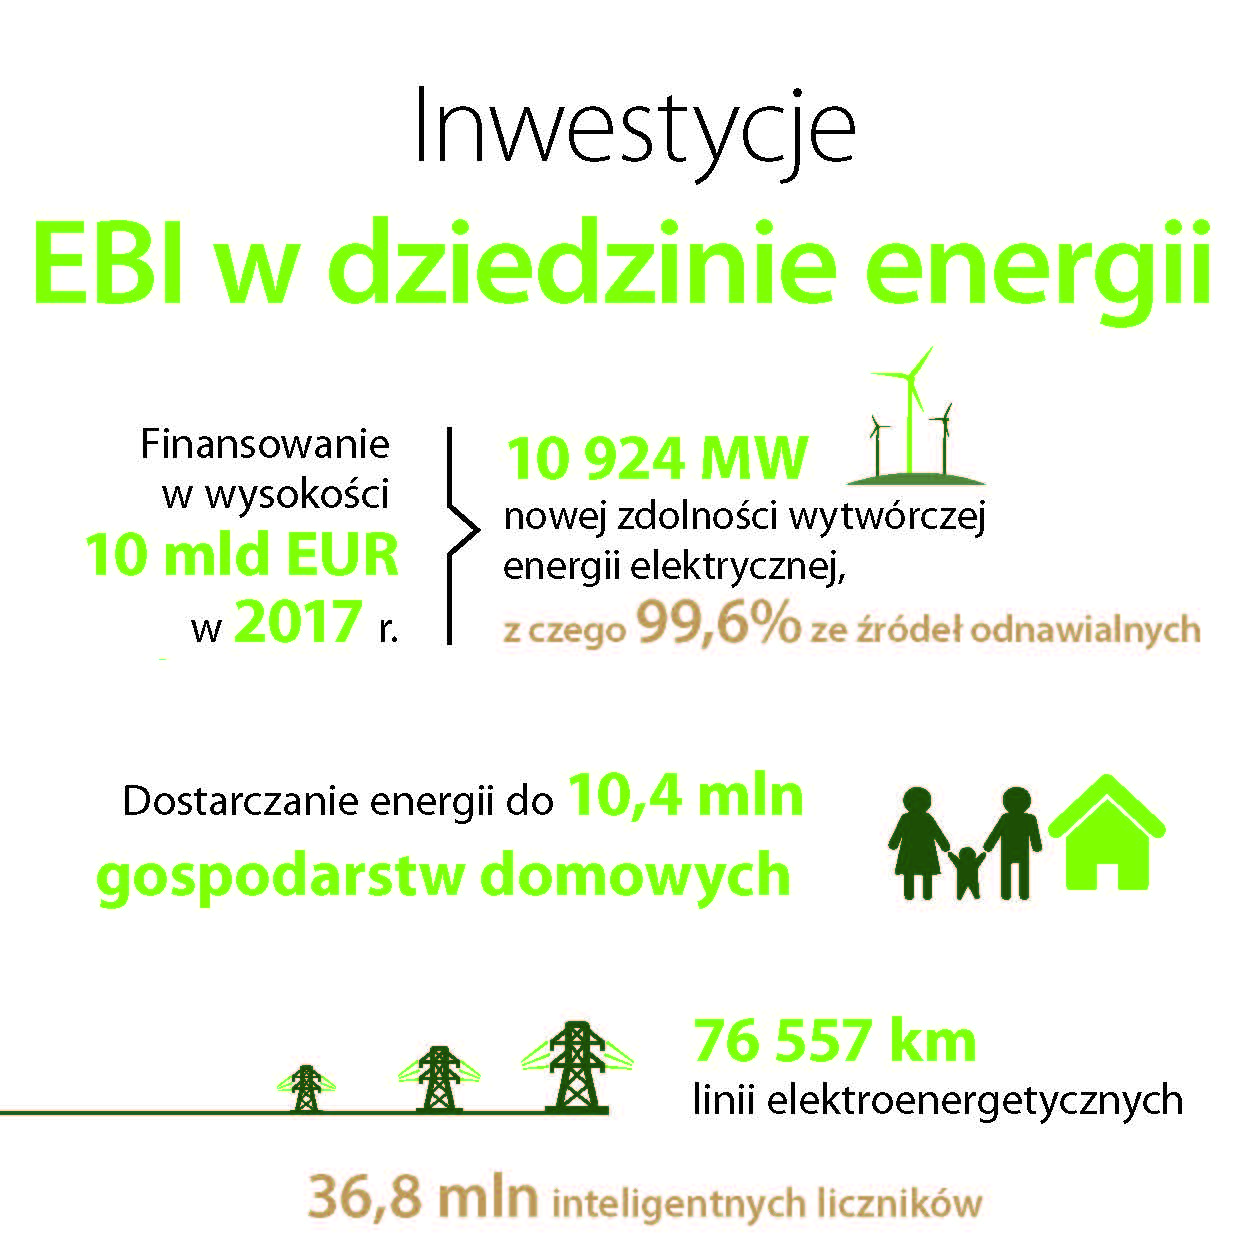 Inwestycje EBI w dziedzinie energii